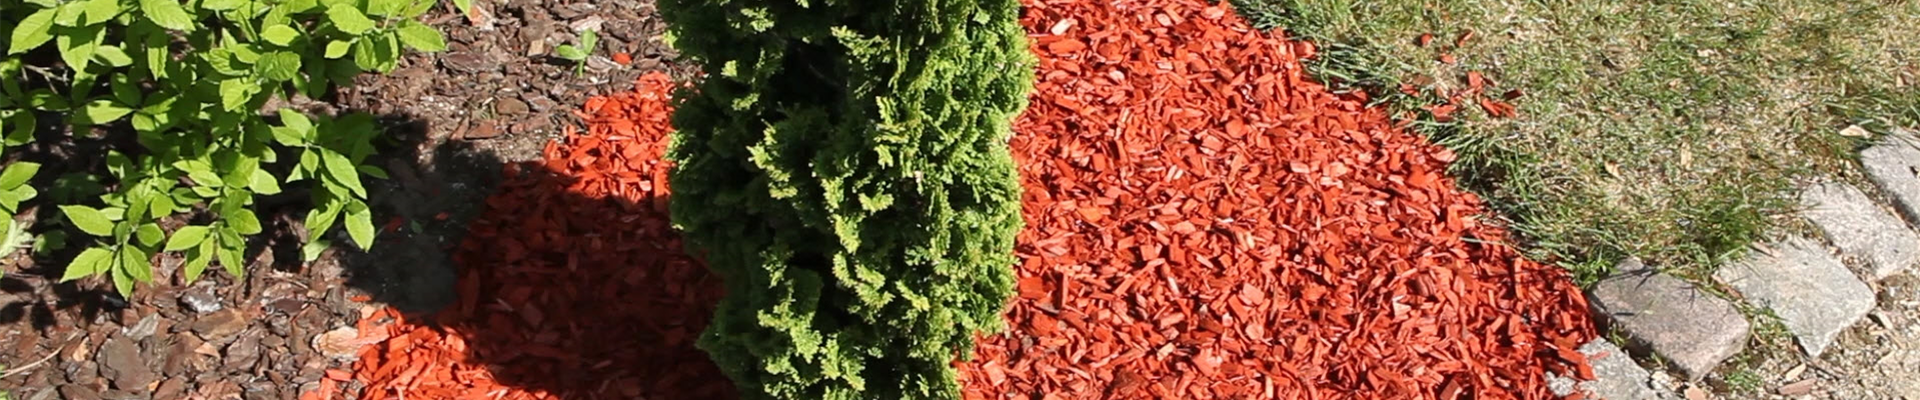 Mulch - Einsatz im Garten (thumbnail)